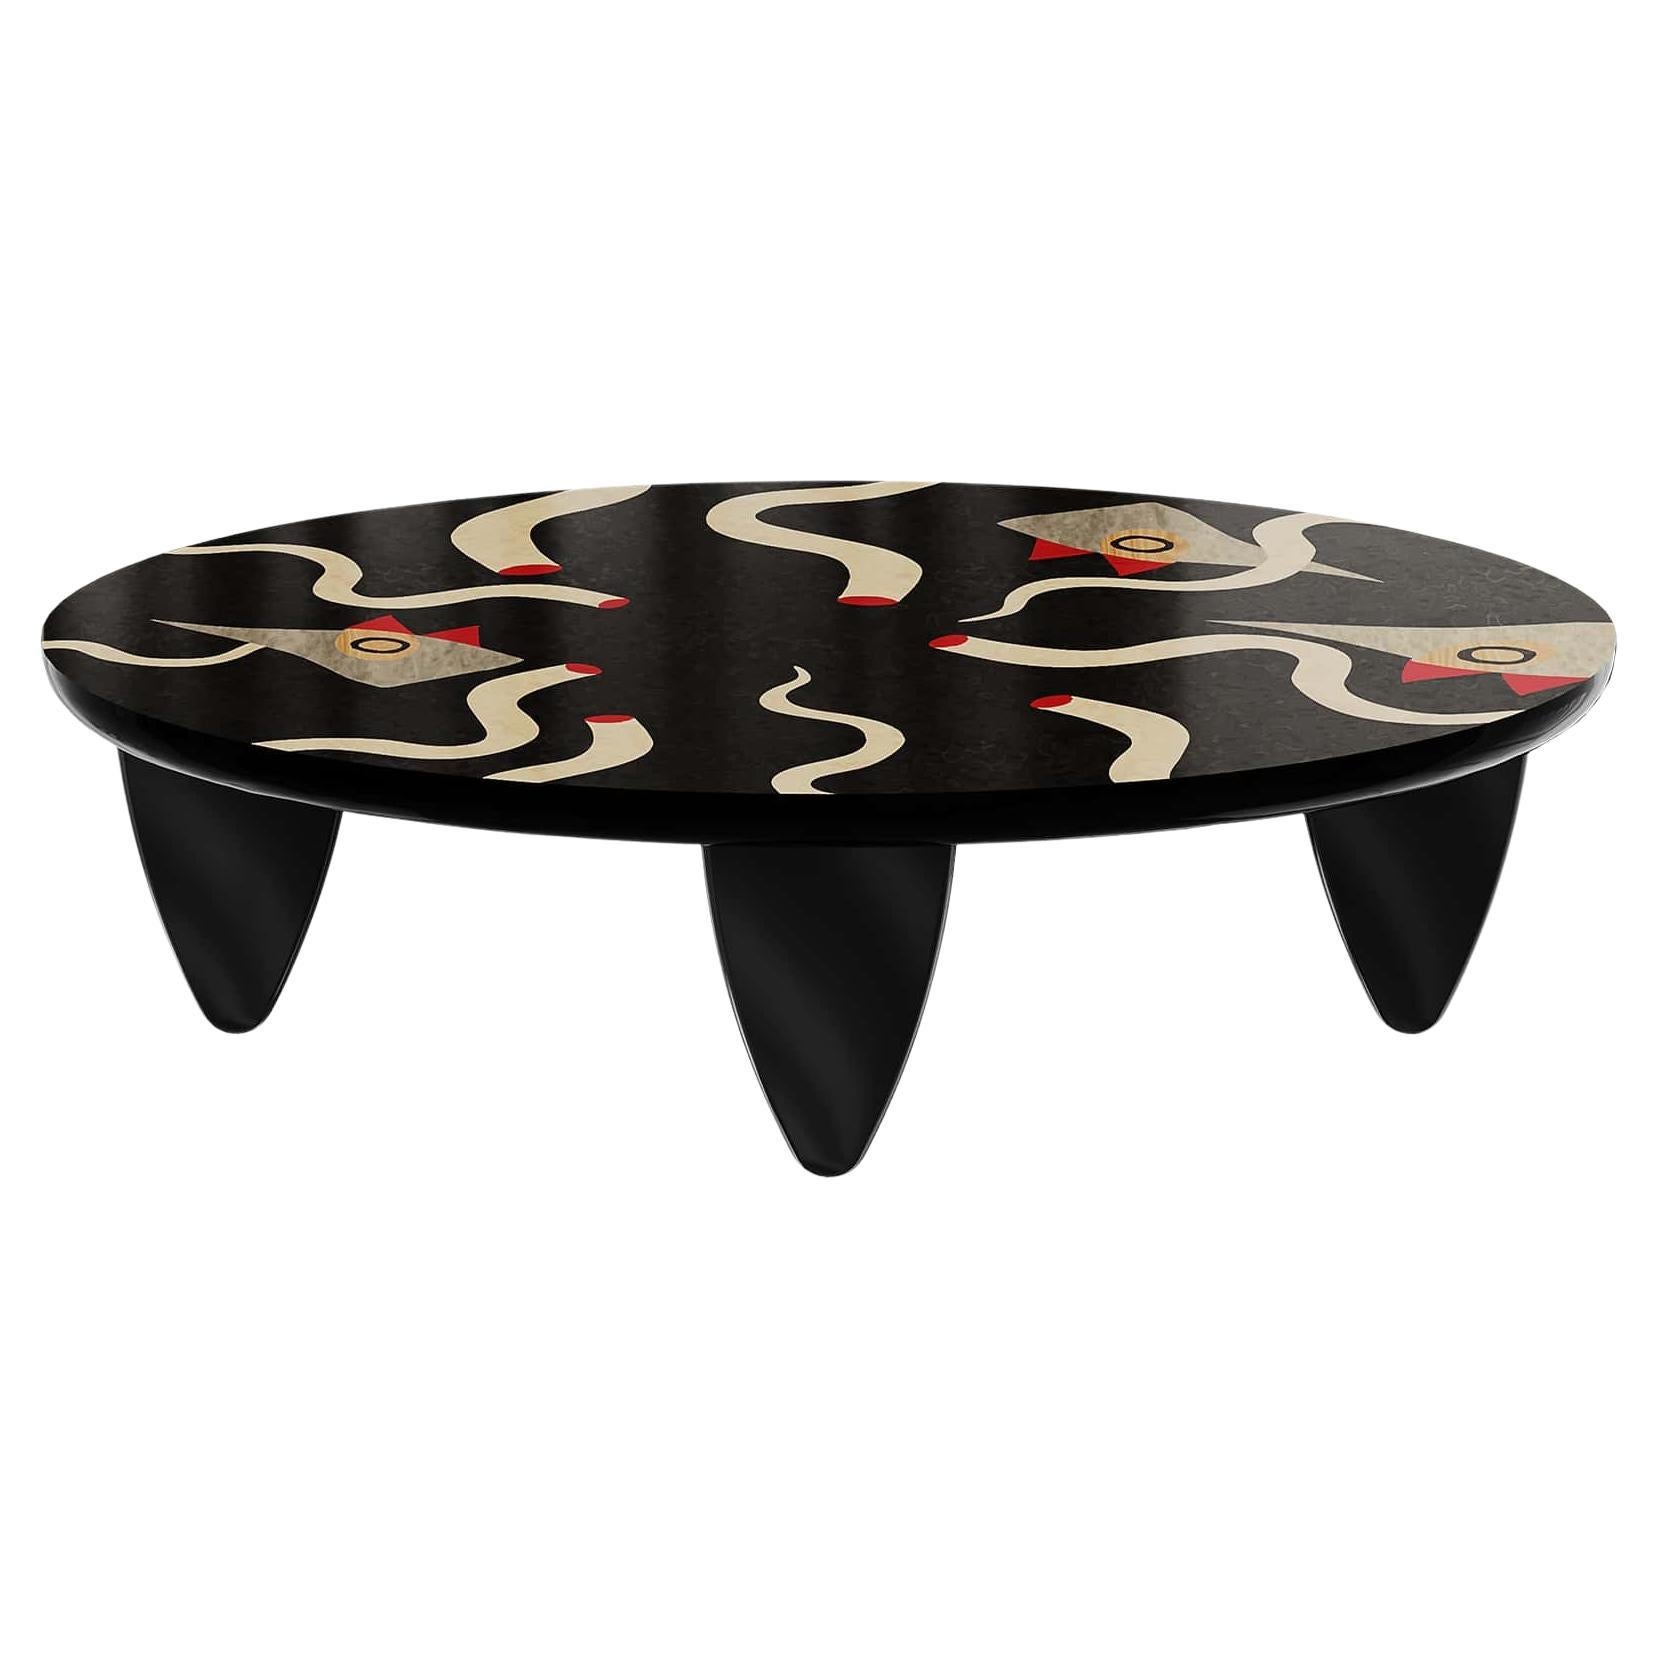 Table basse ovale moderne et organique avec figures surréalistes en bois marquetée noire en vente